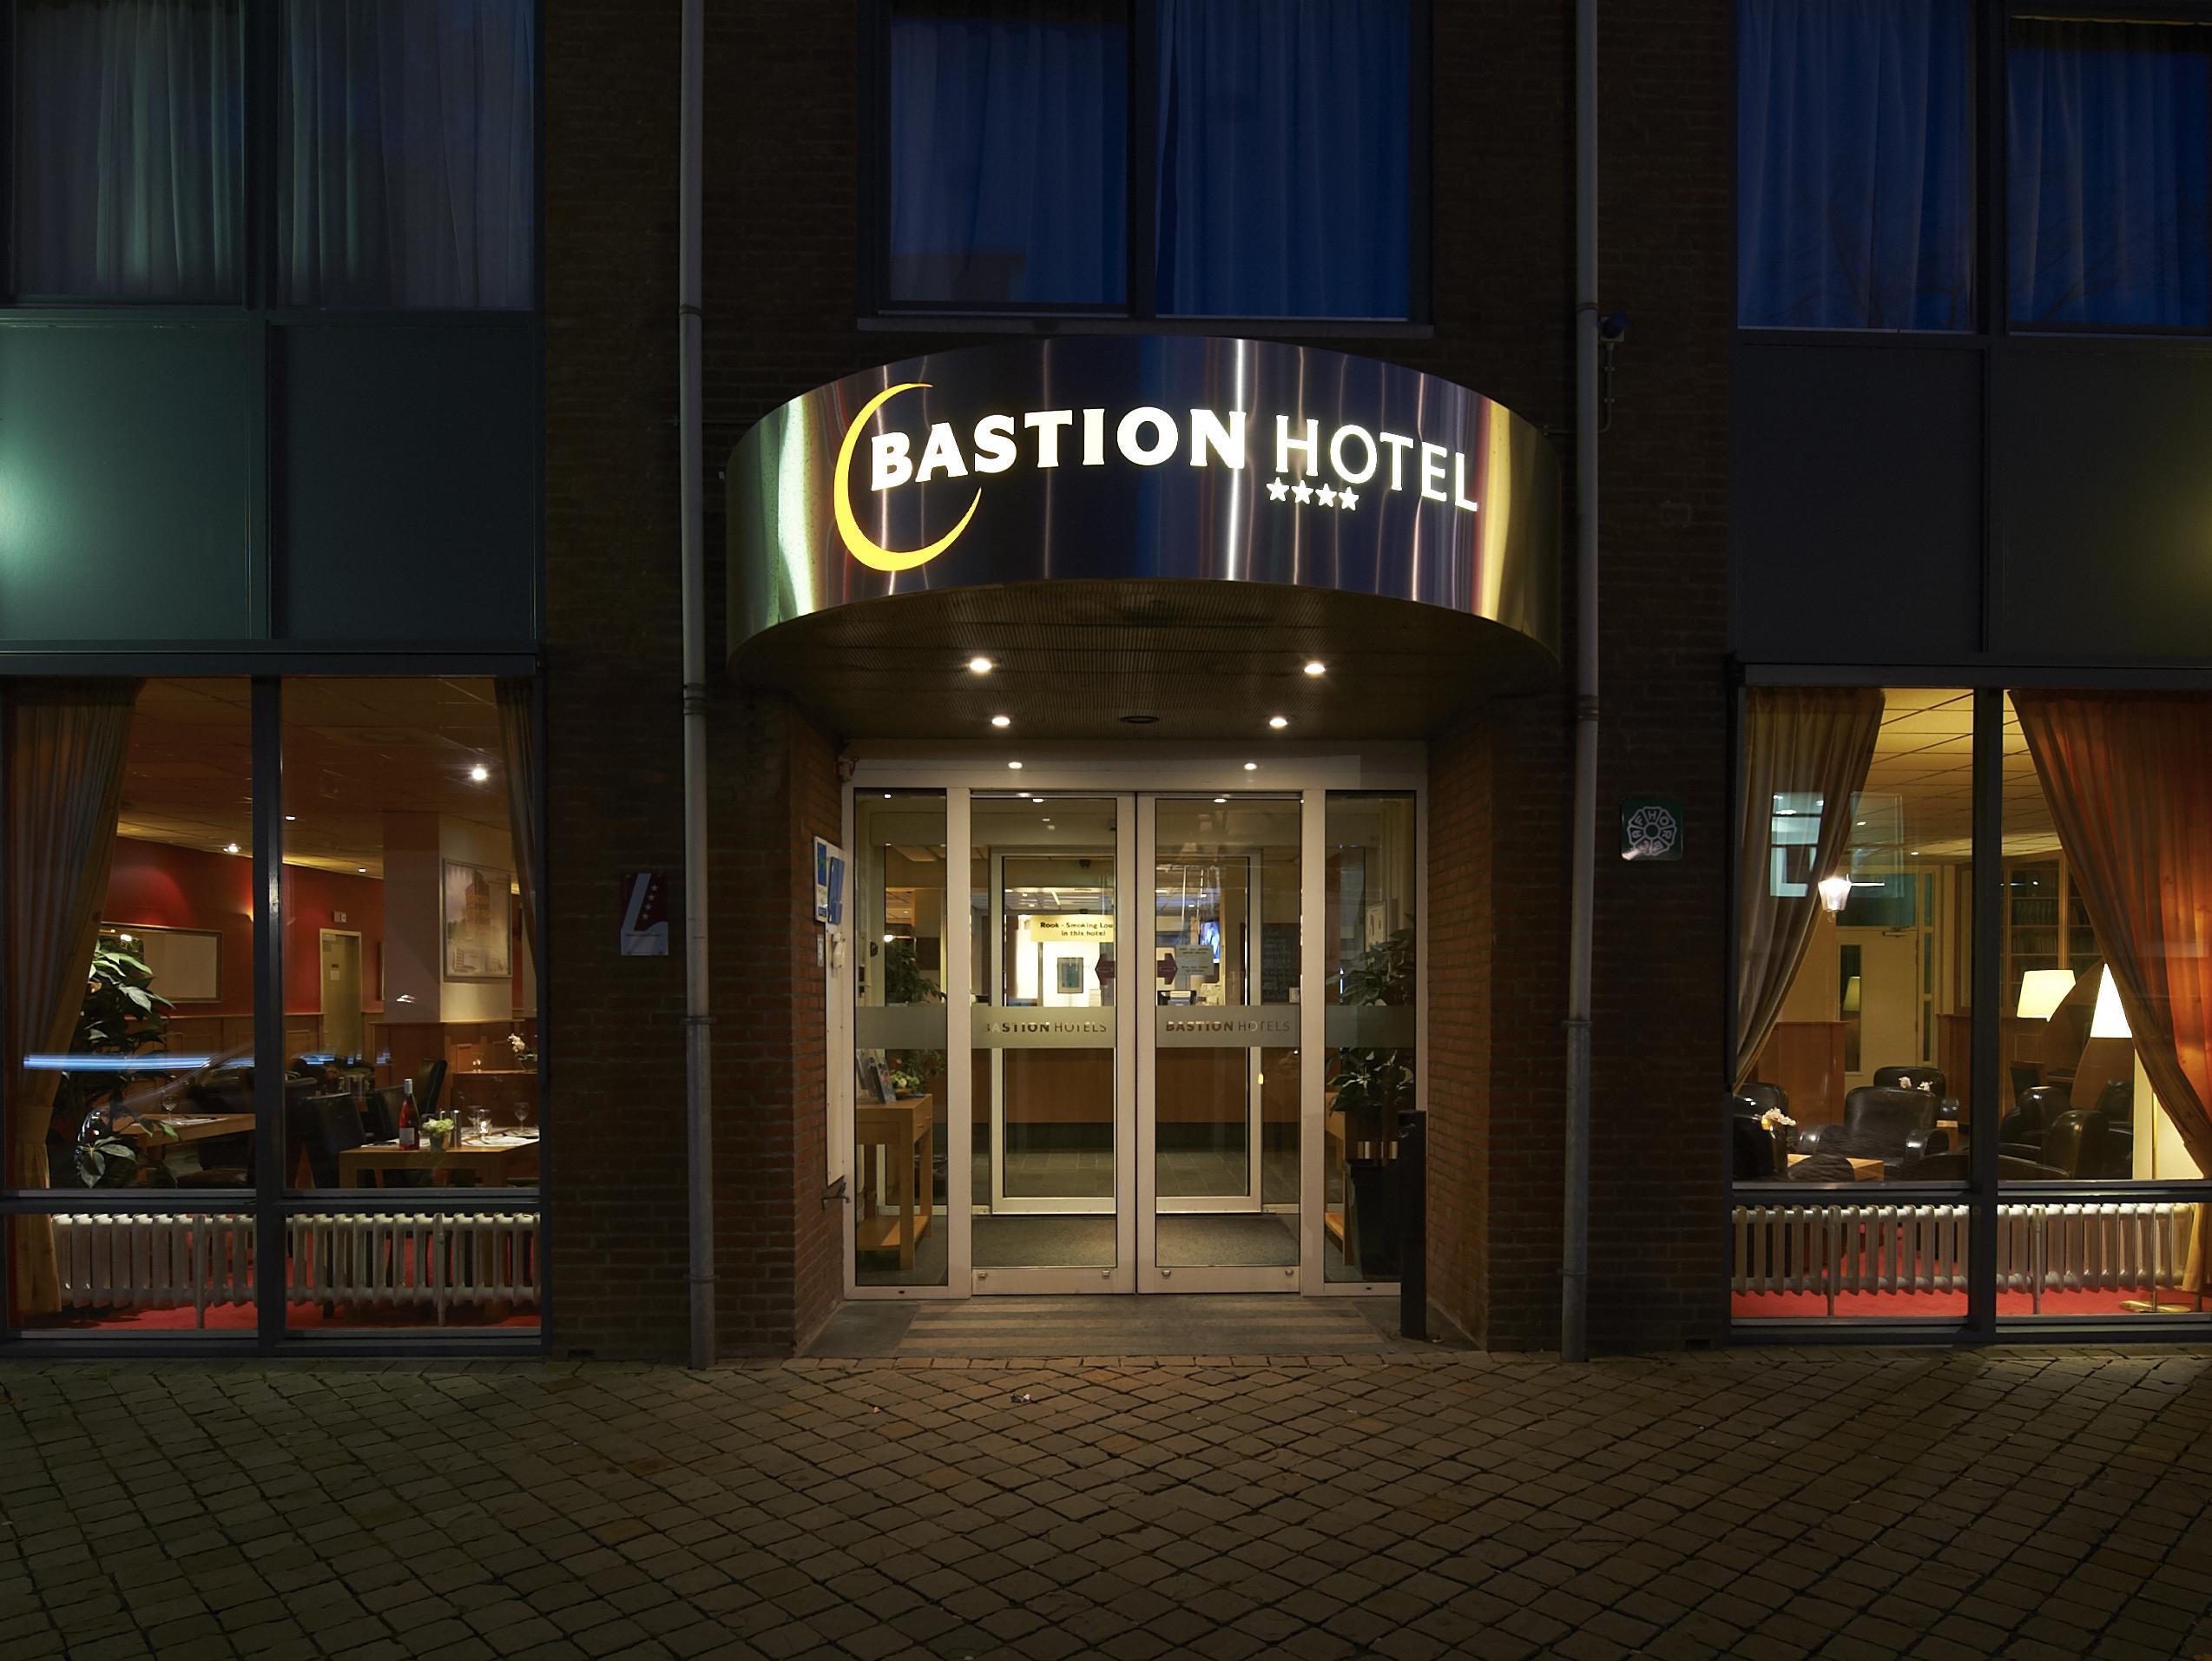 Bastion Hotel Maastricht Centrum Netherlands Q&A 2017